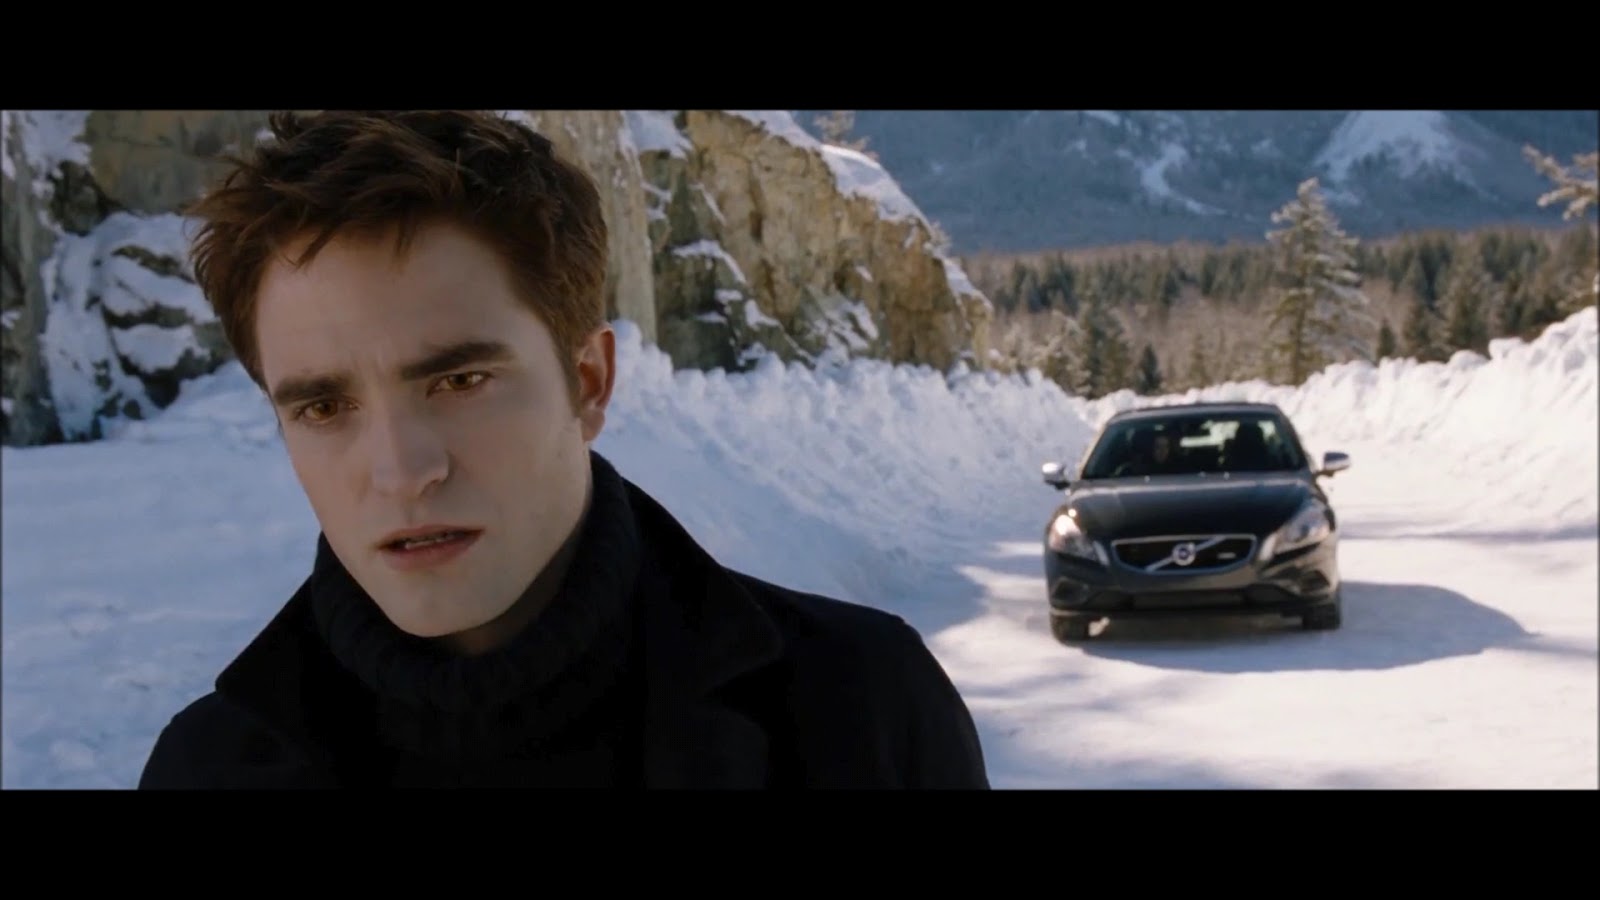 Edward Cullen In Breaking Dawn - Edward Cullen Photo (32099932) - Fanpop1600 x 900